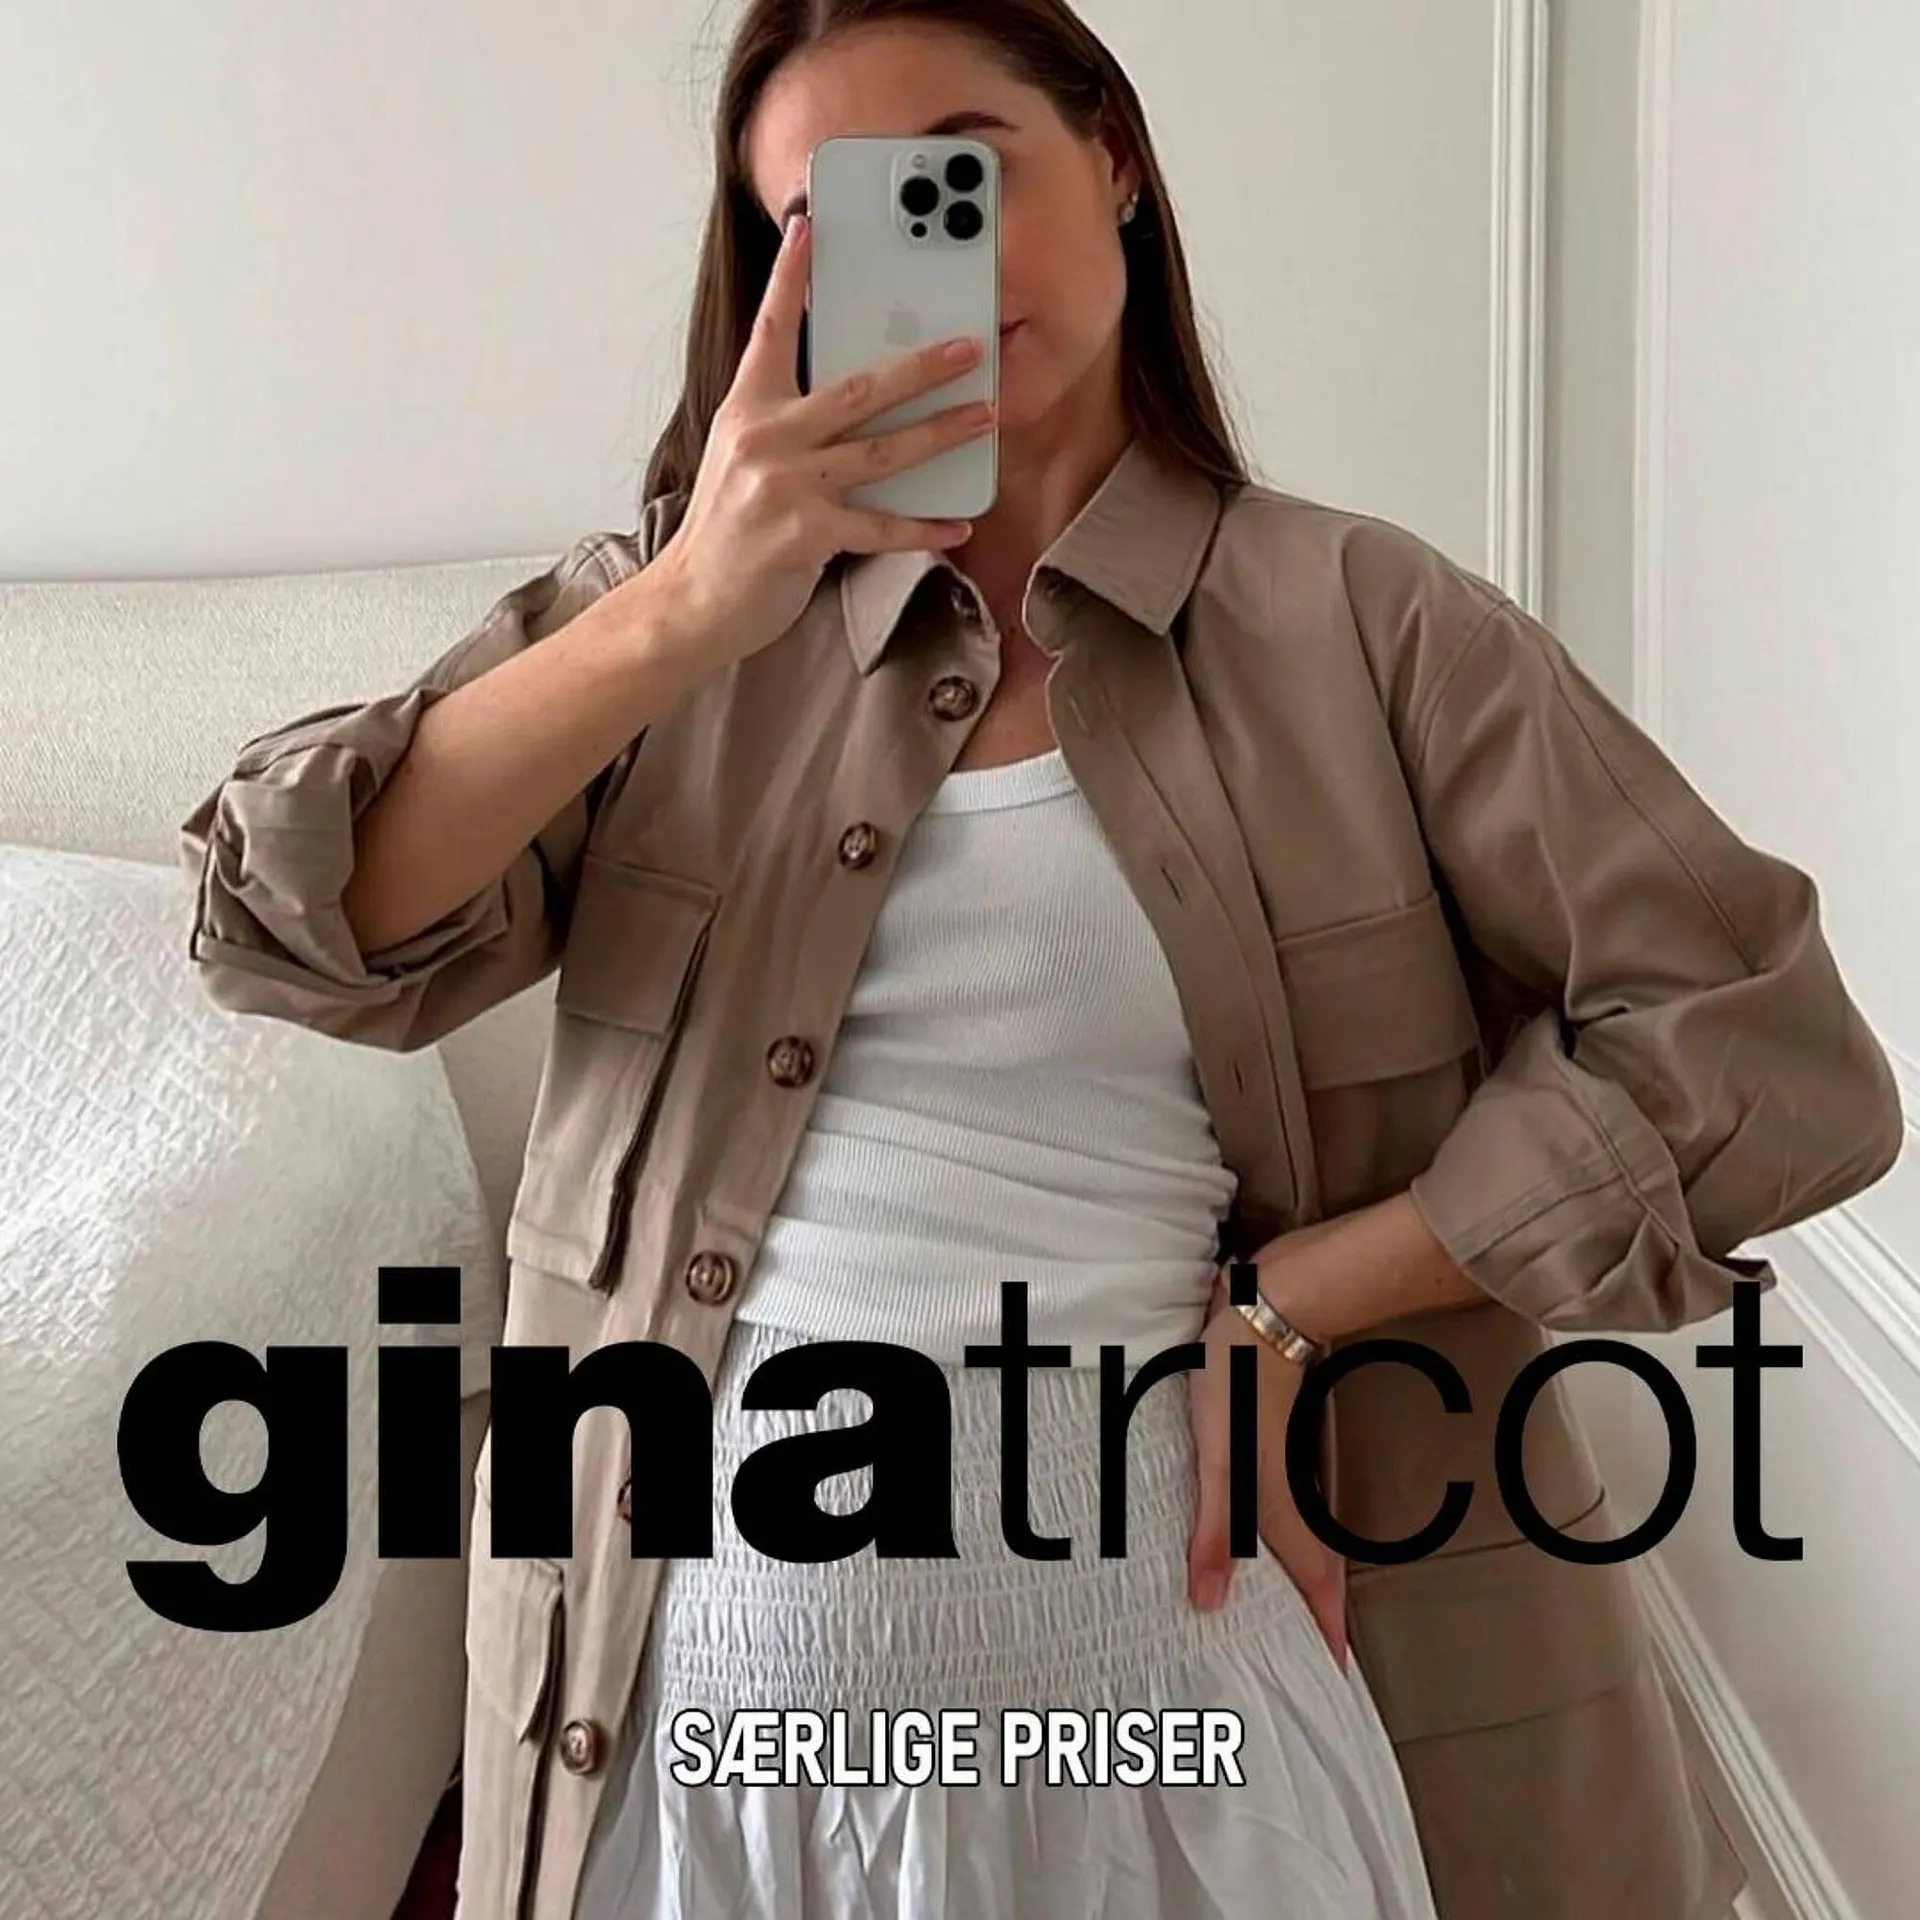 Gina Tricot tilbudsavis - 1